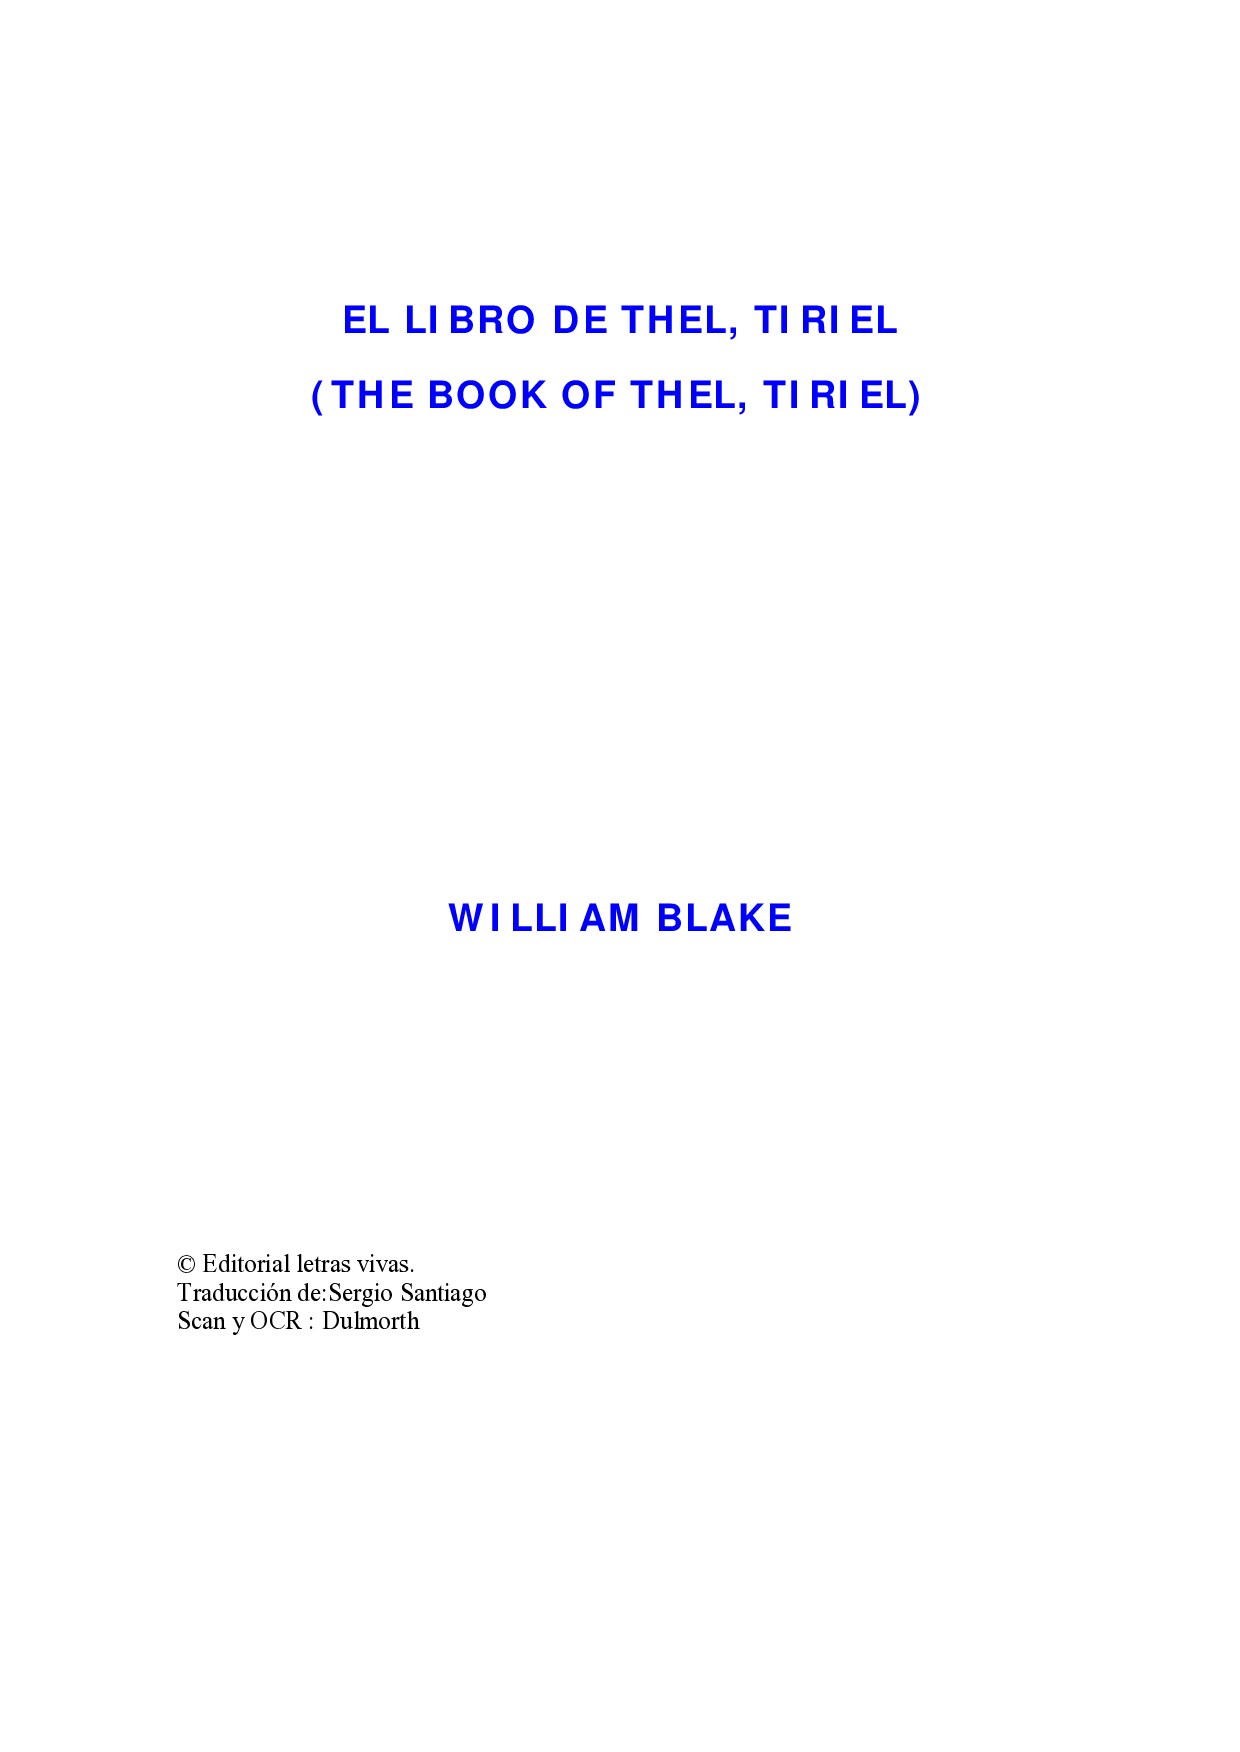 Microsoft Word - Blake, William-El libro de thel-tiriel.doc